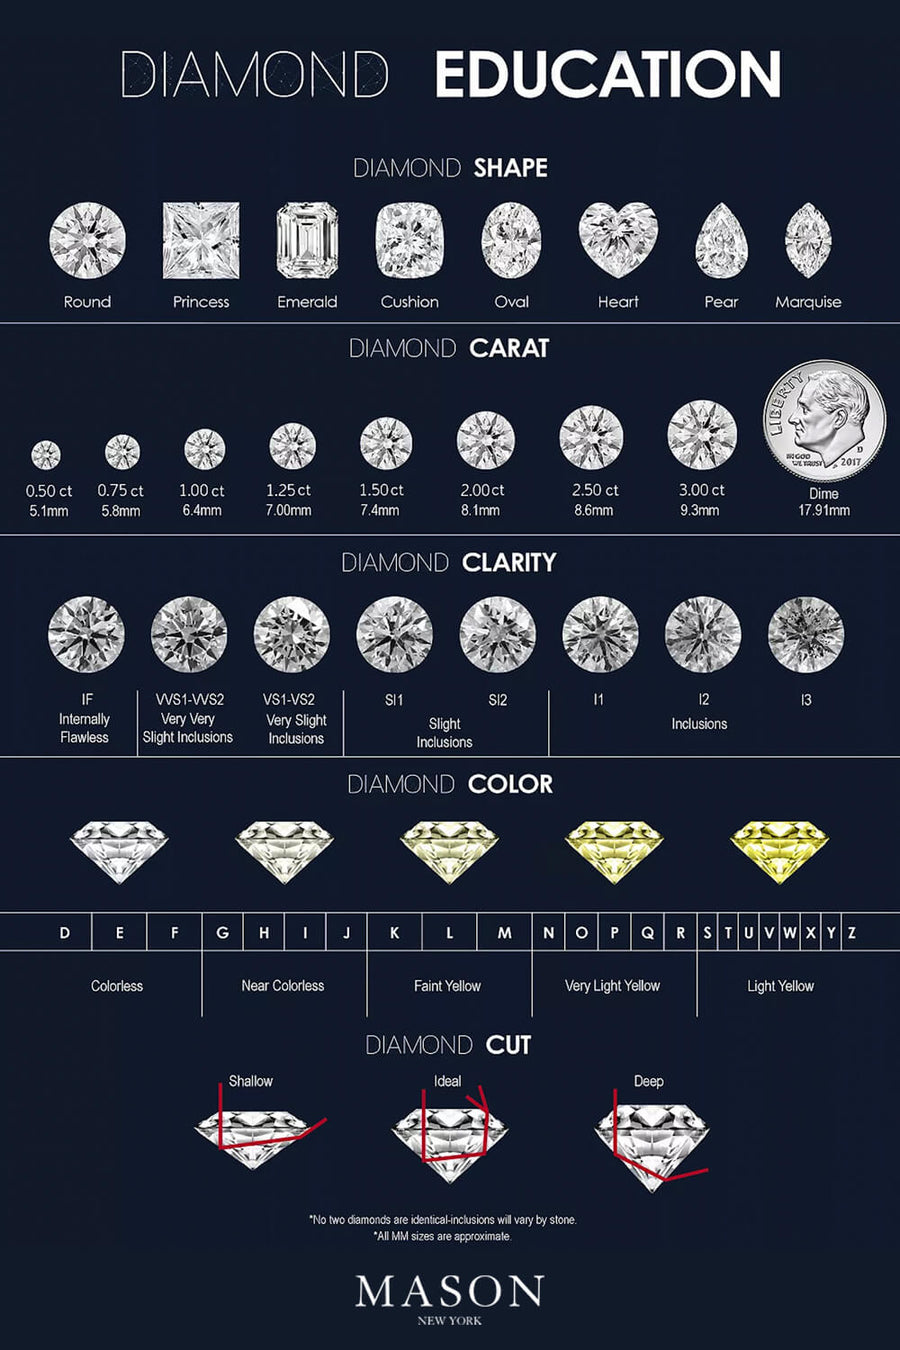 1 Carat Diamond Ring - Express Yourself